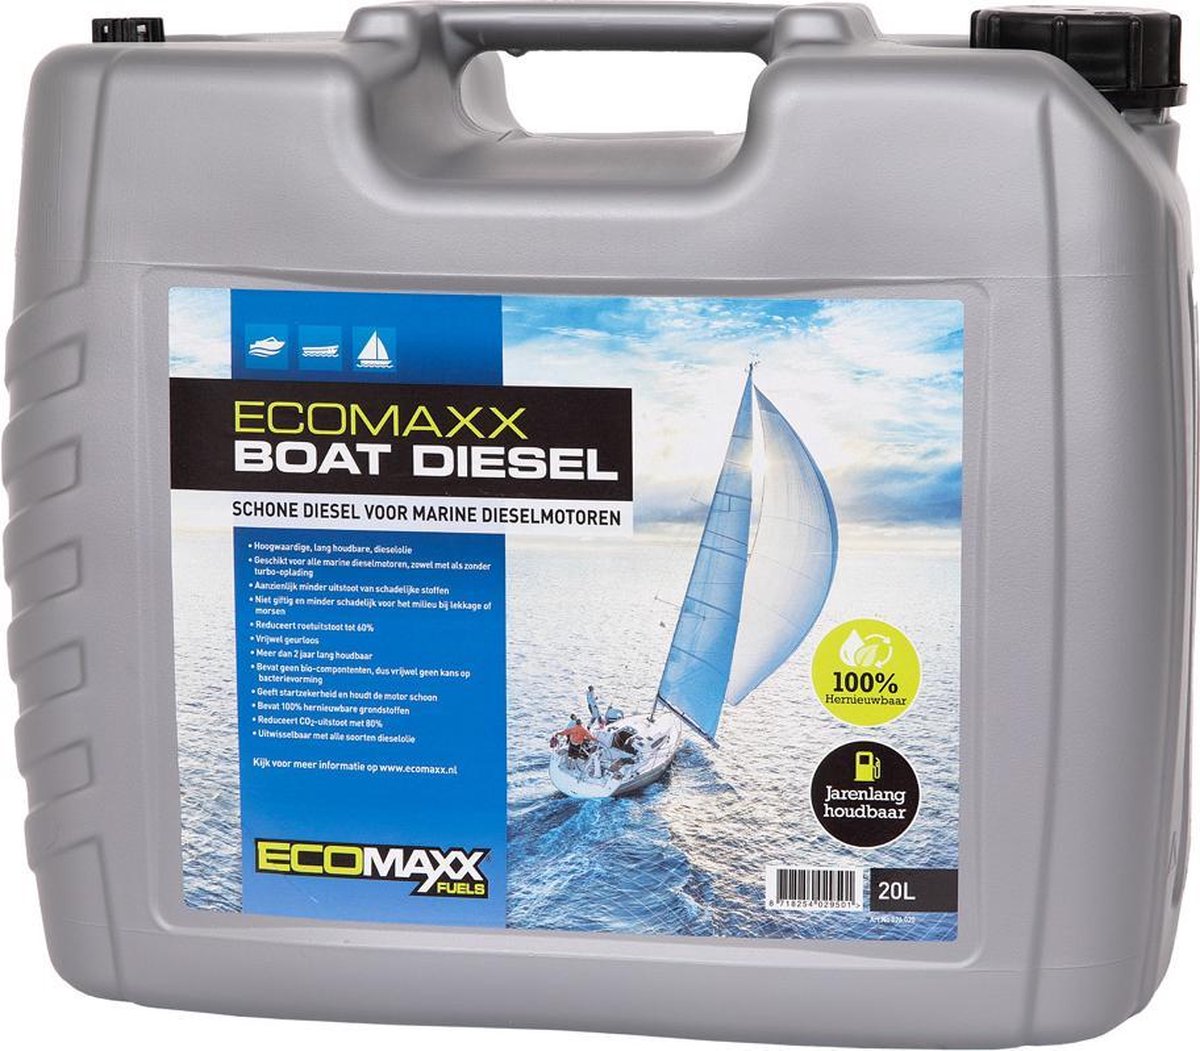 Ecomaxx Boat Diesel - 20L Can